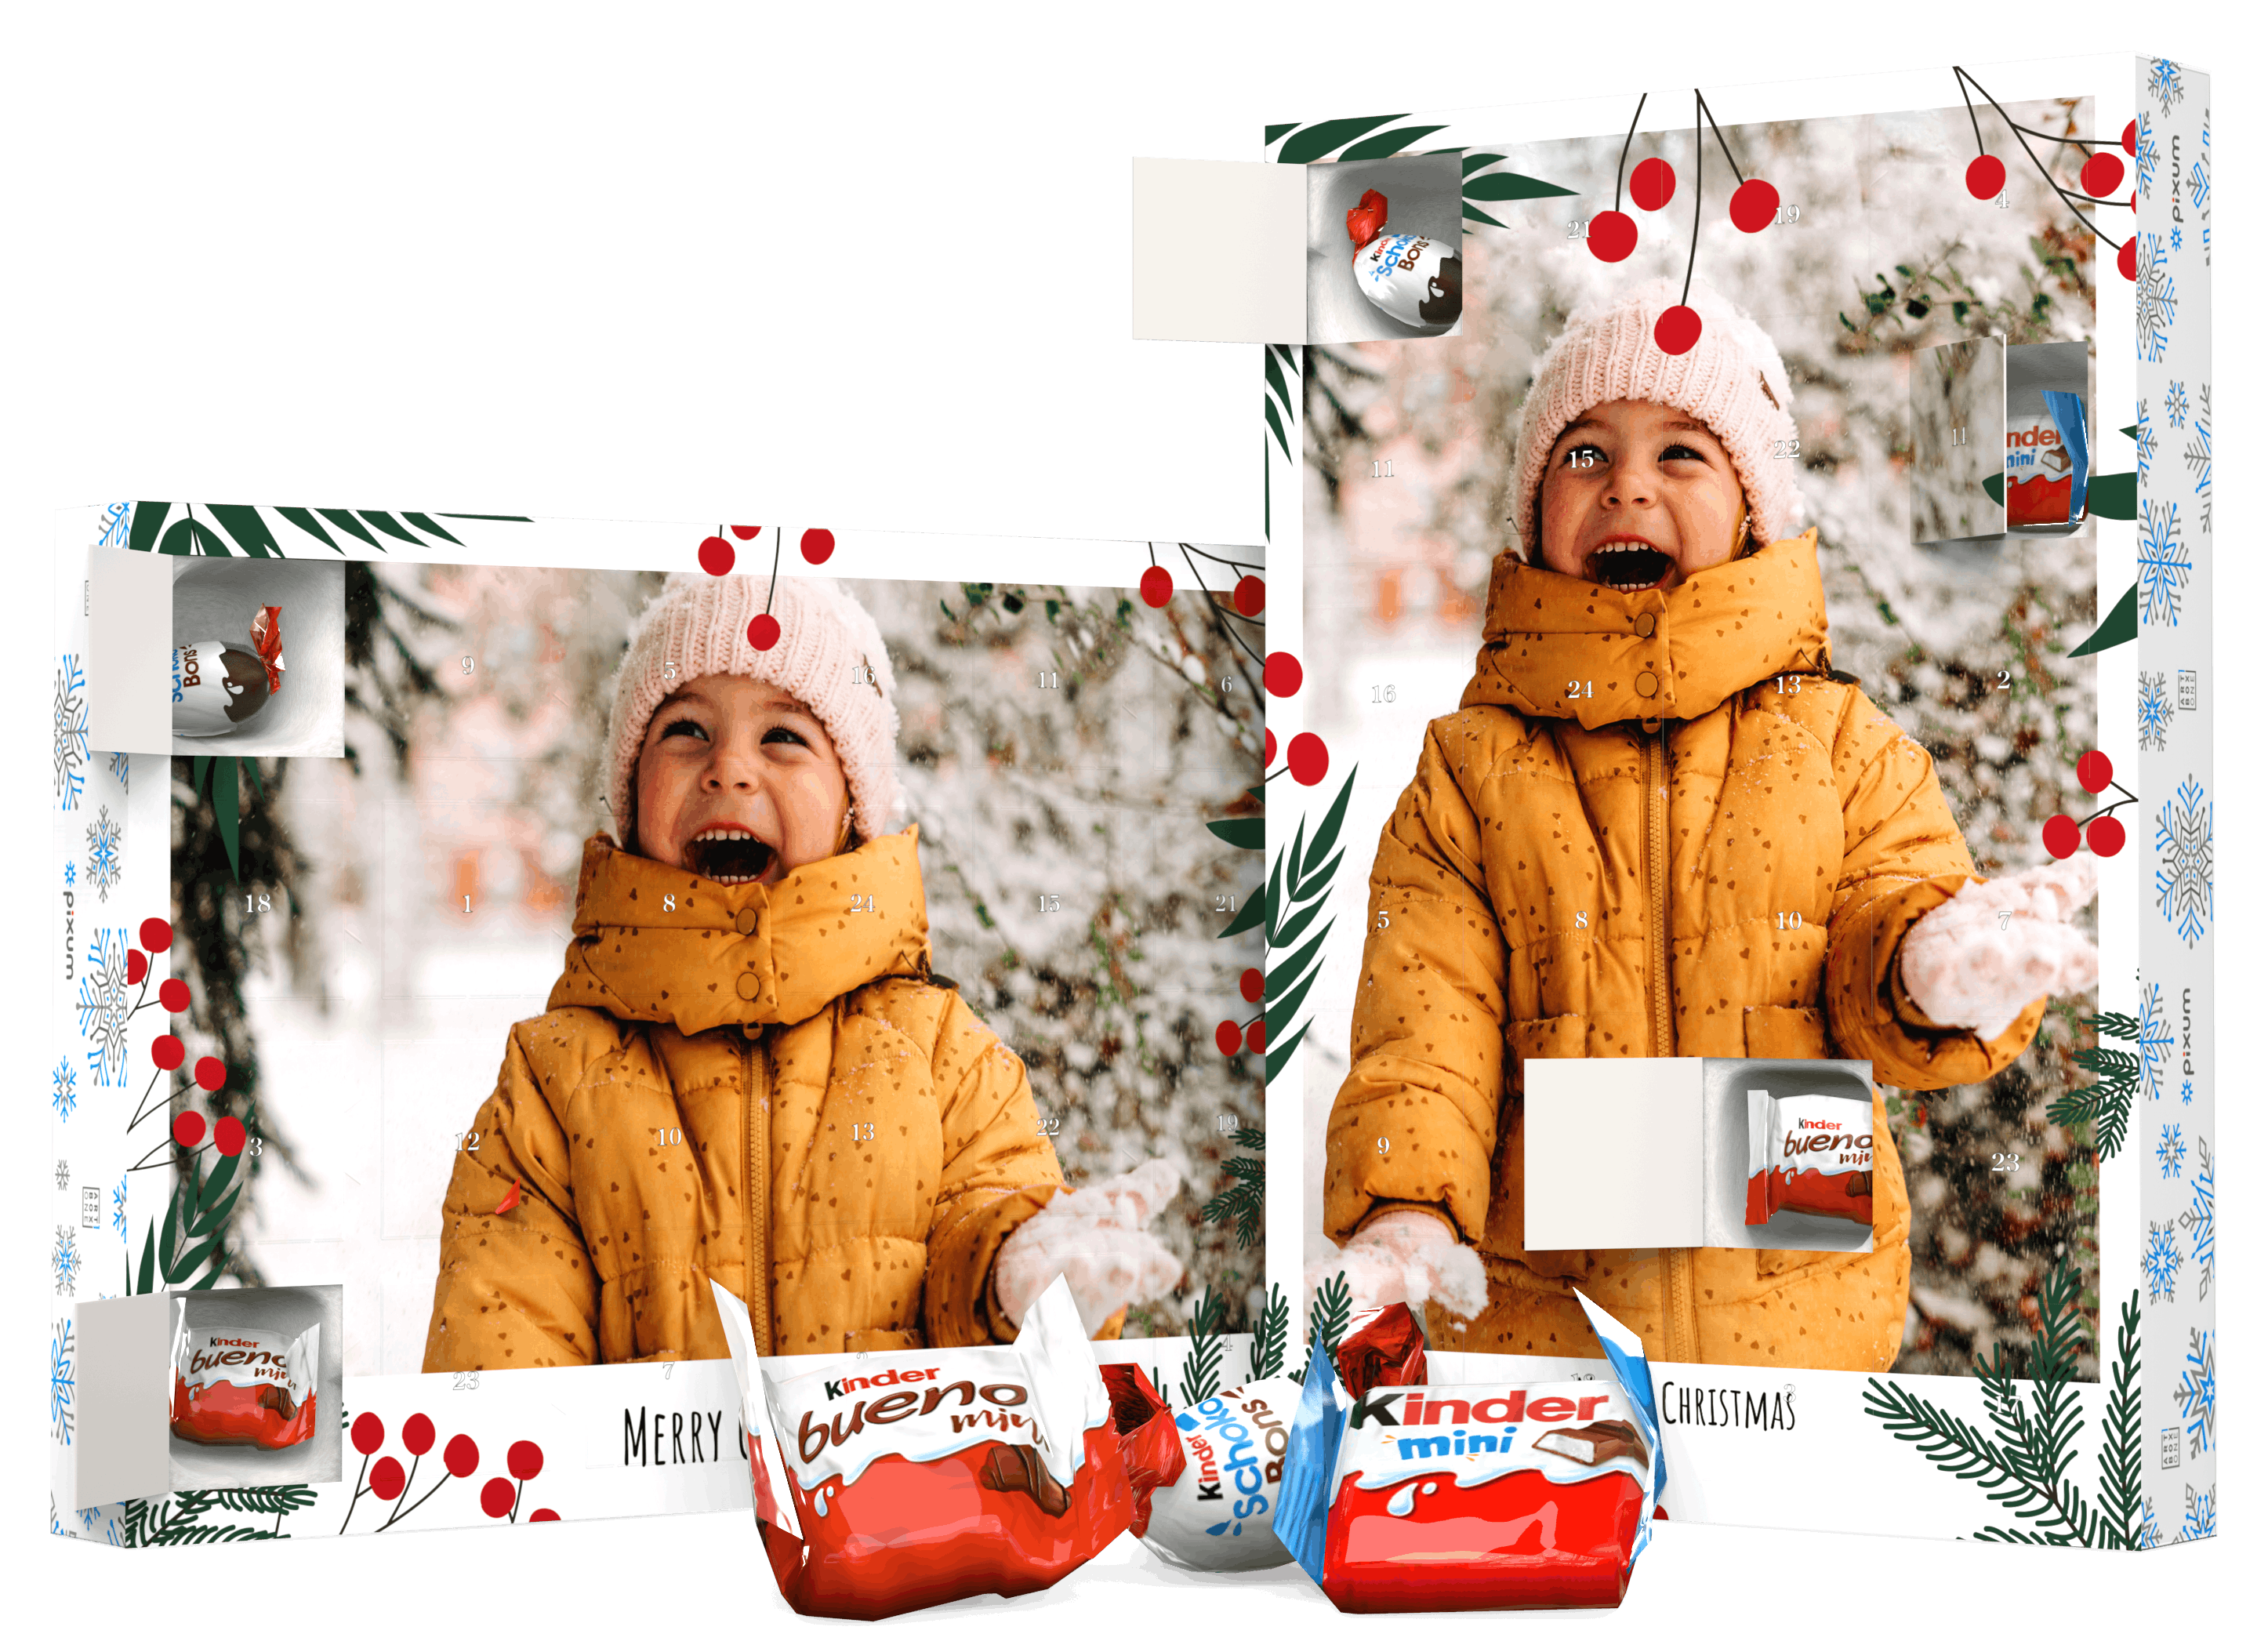 Adventskalender van kinder met een foto van een klein meisje in de sneeuw